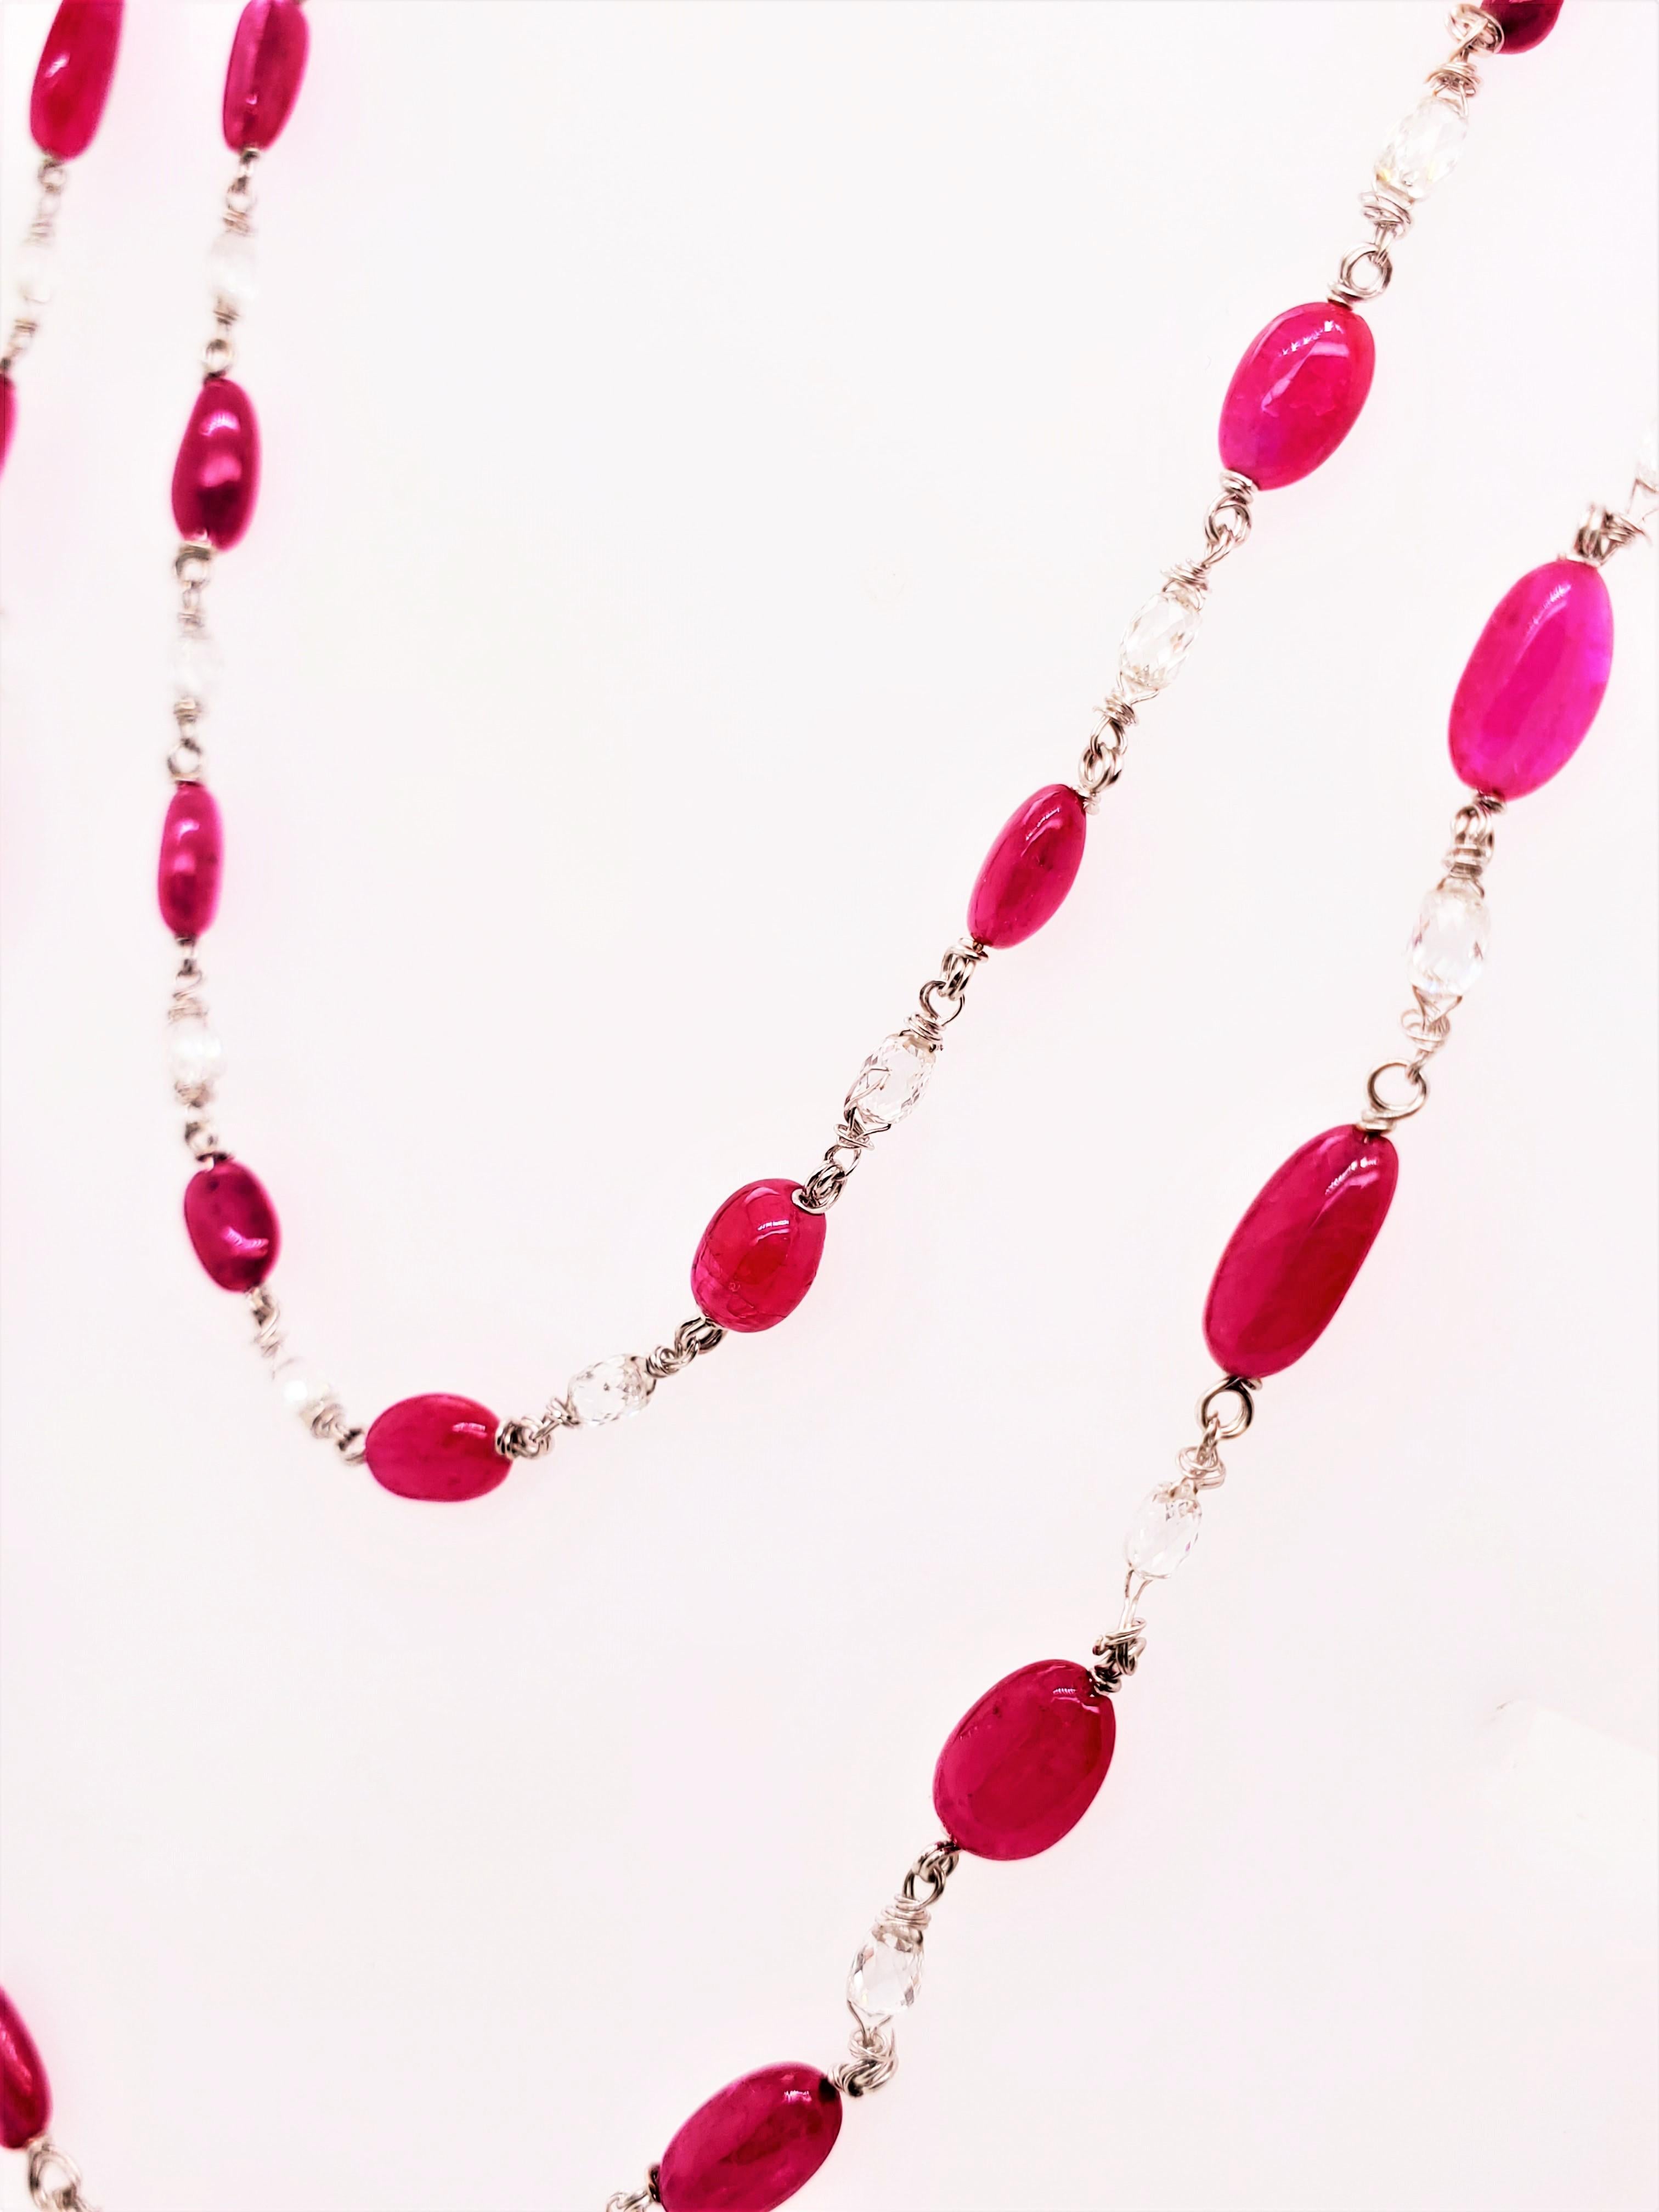 Collier en or blanc avec perles de rubis rouge vif et briolette de diamants :

Ce collier de perles scintillantes est orné de 37 rubis rouges vifs pesant 41 carats ainsi que de 37 briolettes de diamants blancs pesant 5,14 carats. Les rubis sont